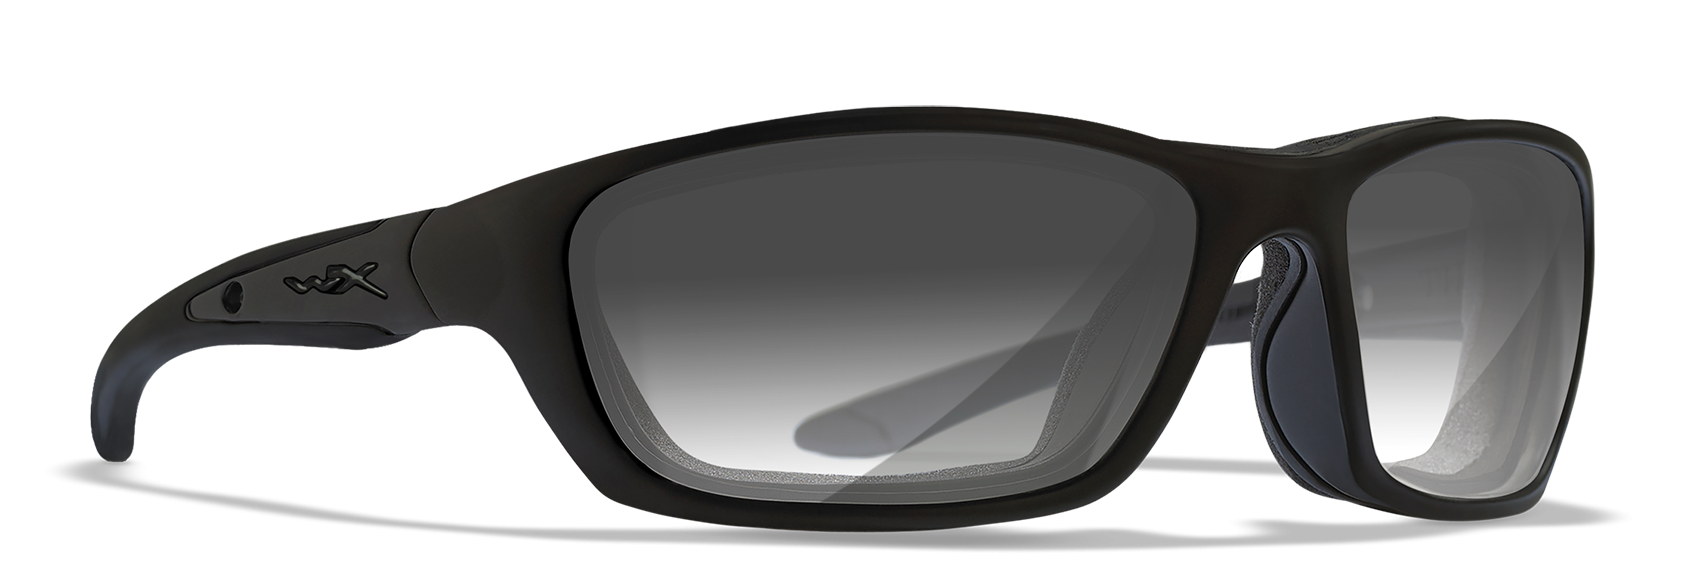 Wiley X Brick Photochromic Smoke Grey Polycarbonate Sunglasses